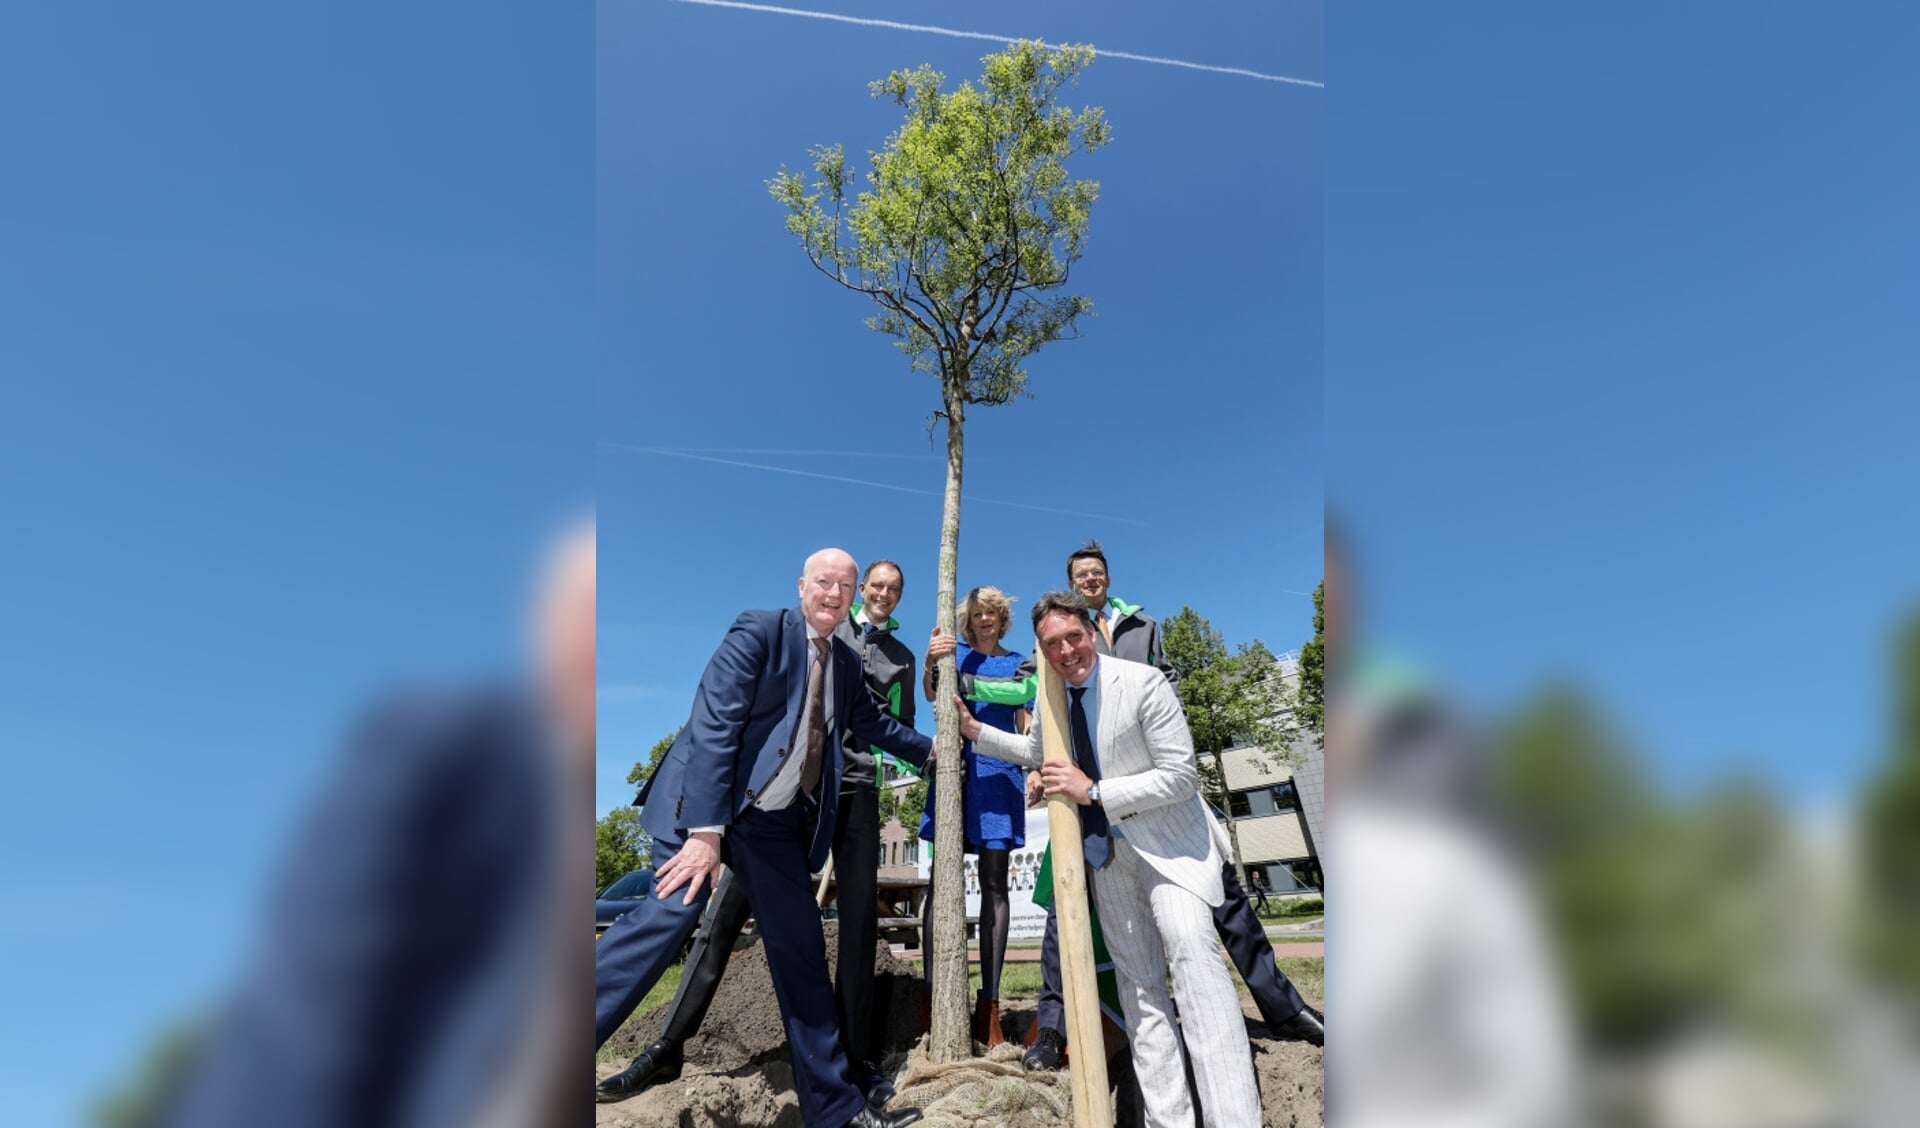 Burgemeester Ruud van Bennekom, CFO Frans den Houter, Lena Euwens (Trees for All), Jorrit Eijbersen (wethouder) en CEO Rob van Wingerden